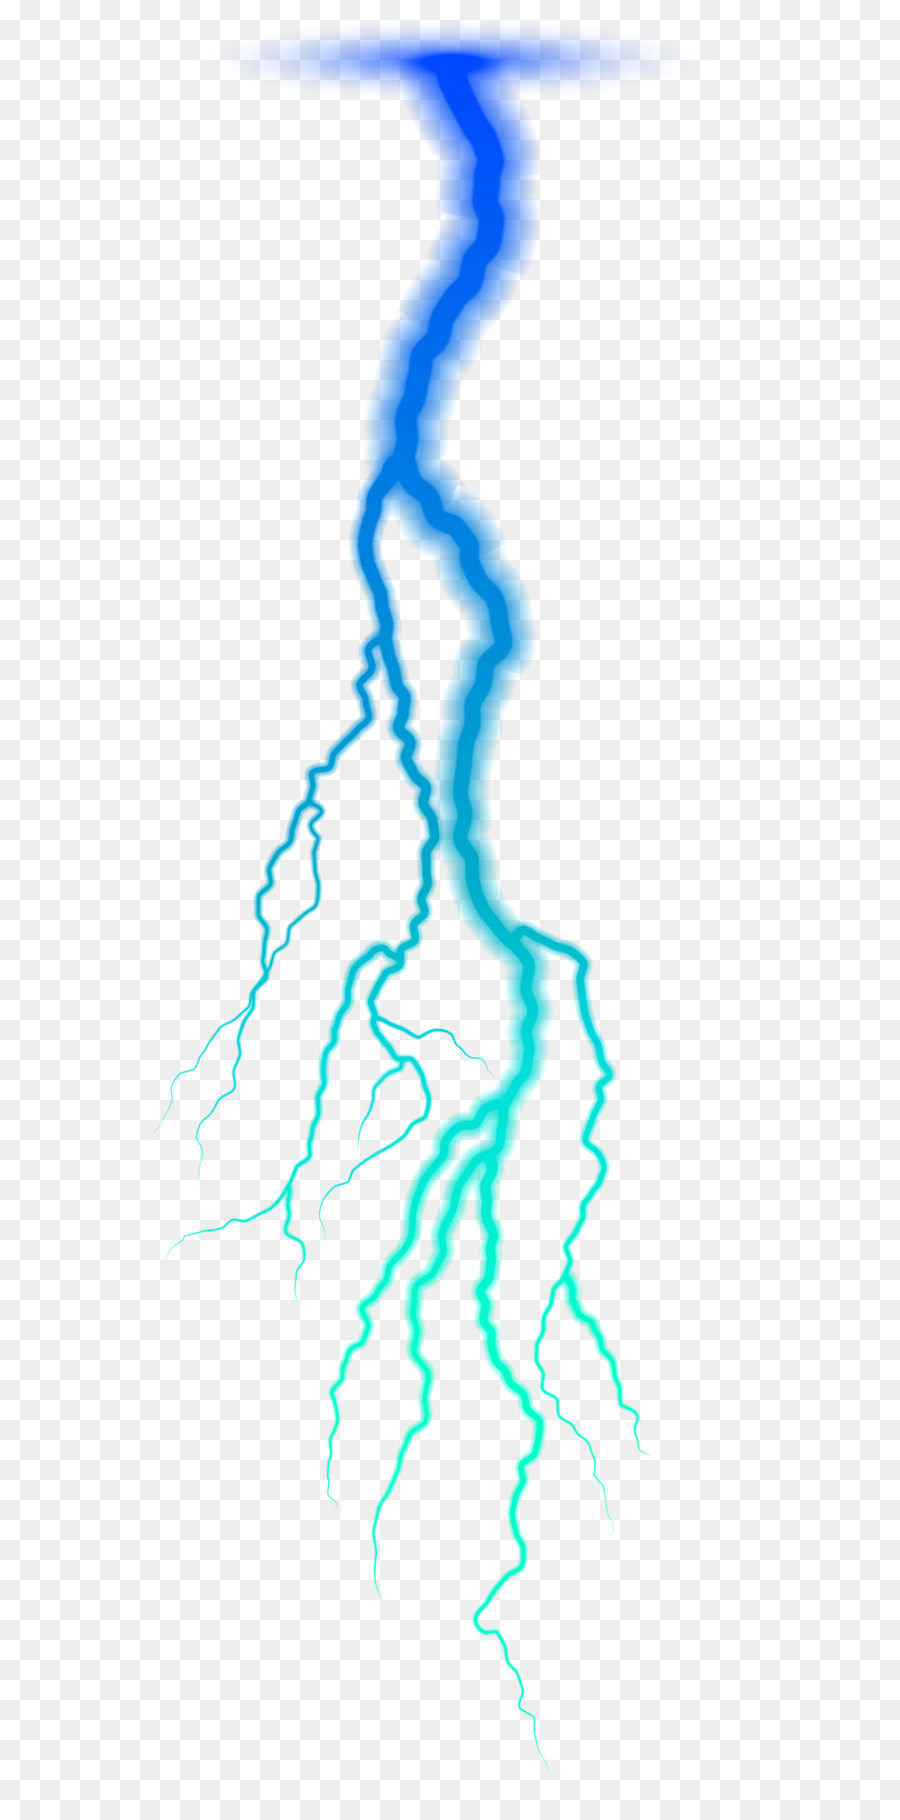 Lightning strike Clip art - Blue Lightning PNG Transparent Clip Art Image png download - 4629*12845 - Free Transparent Lightning png Download.